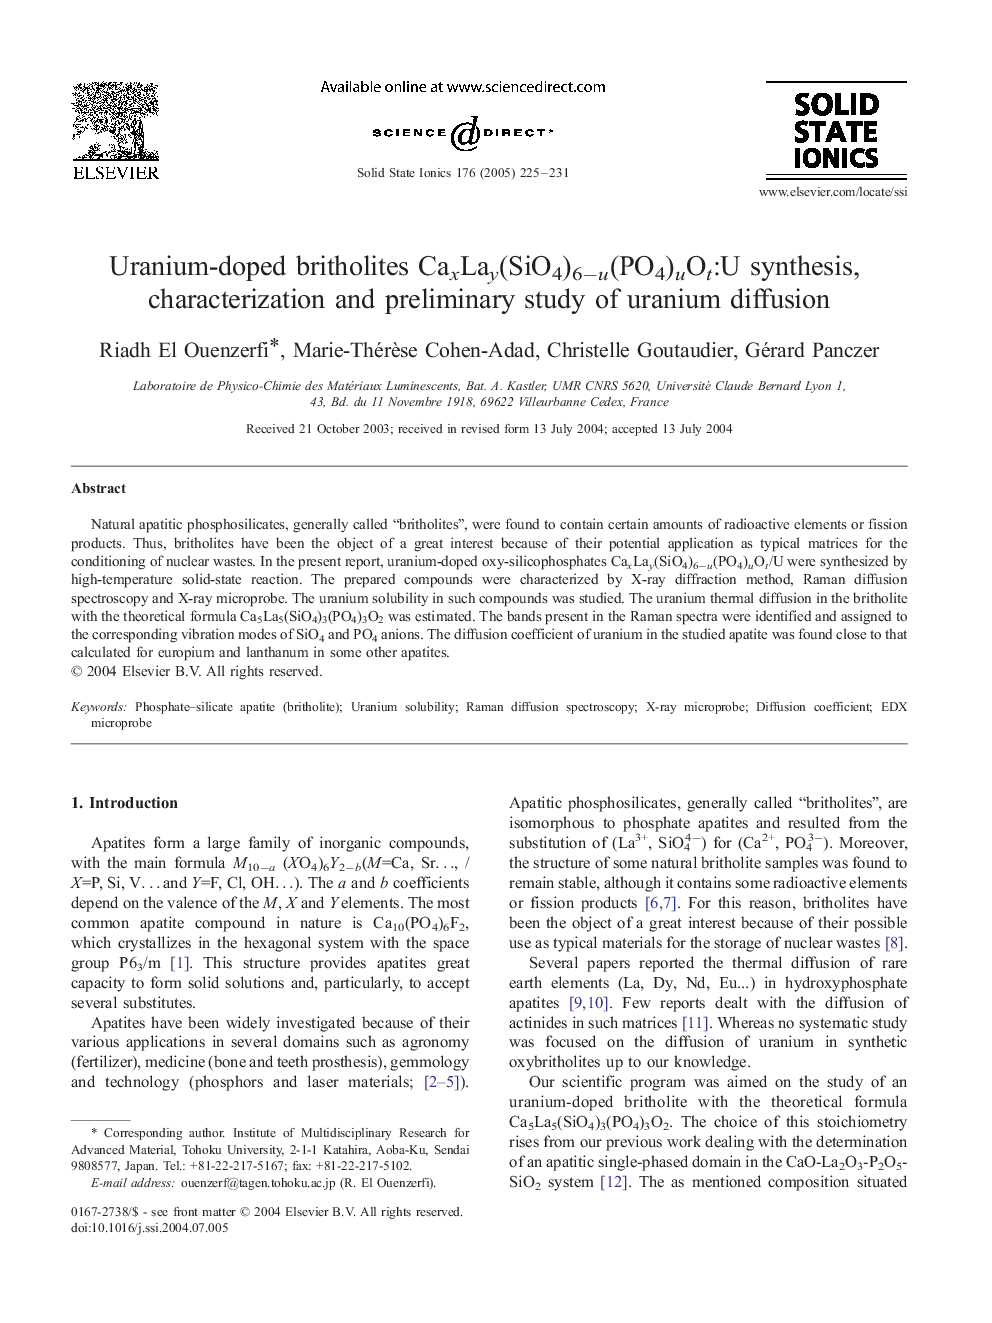 Uranium-doped britholites CaxLay(SiO4)6âu(PO4)uOt:U synthesis, characterization and preliminary study of uranium diffusion